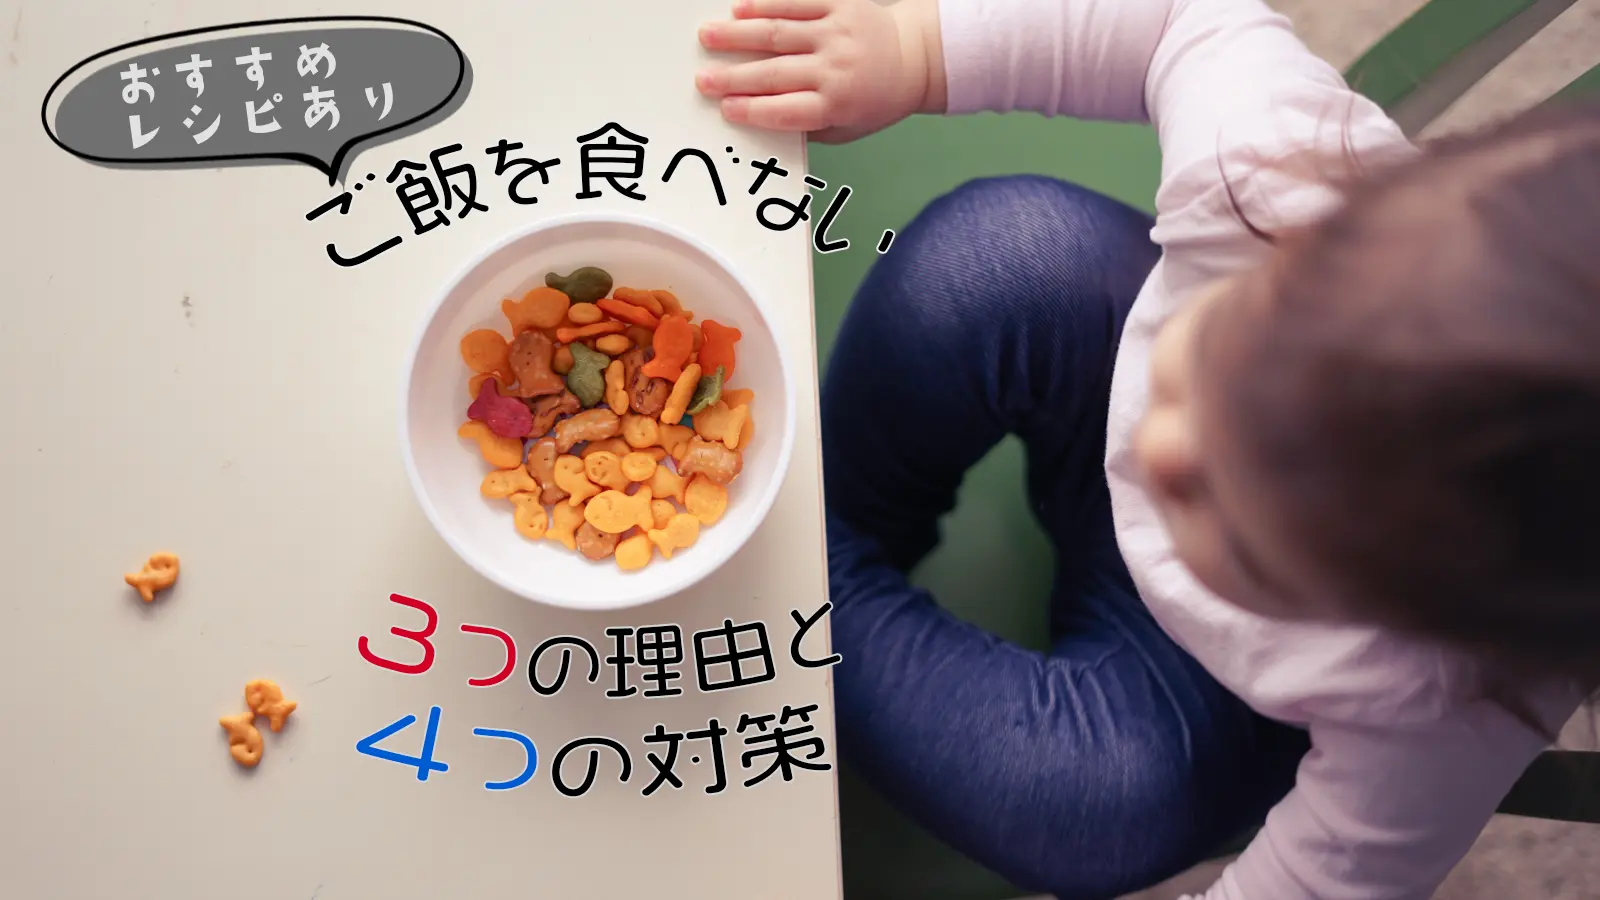 1歳の子どもがご飯を食べない3つの理由と4つの対策 栄養士おすすめレシピあり